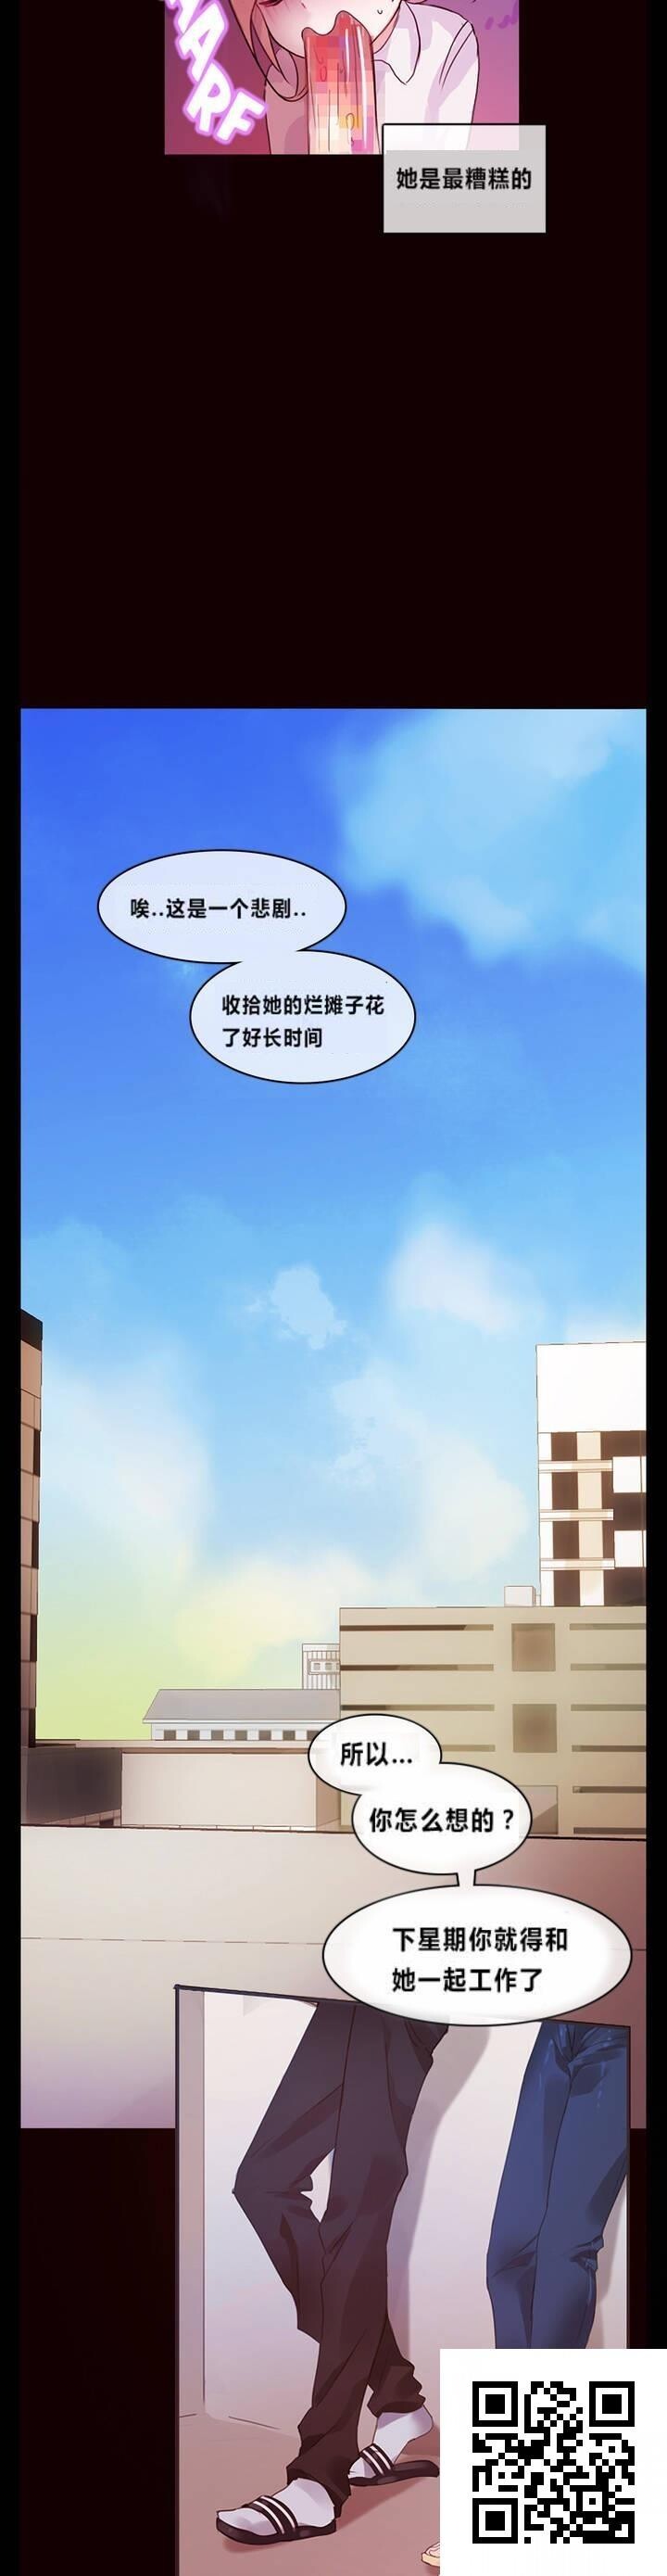 [韩漫]一个变态的日常生活#01[26P]第1页 作者:Publisher 帖子ID:918 TAG:2048核基地,卡通漫畫,动漫图片